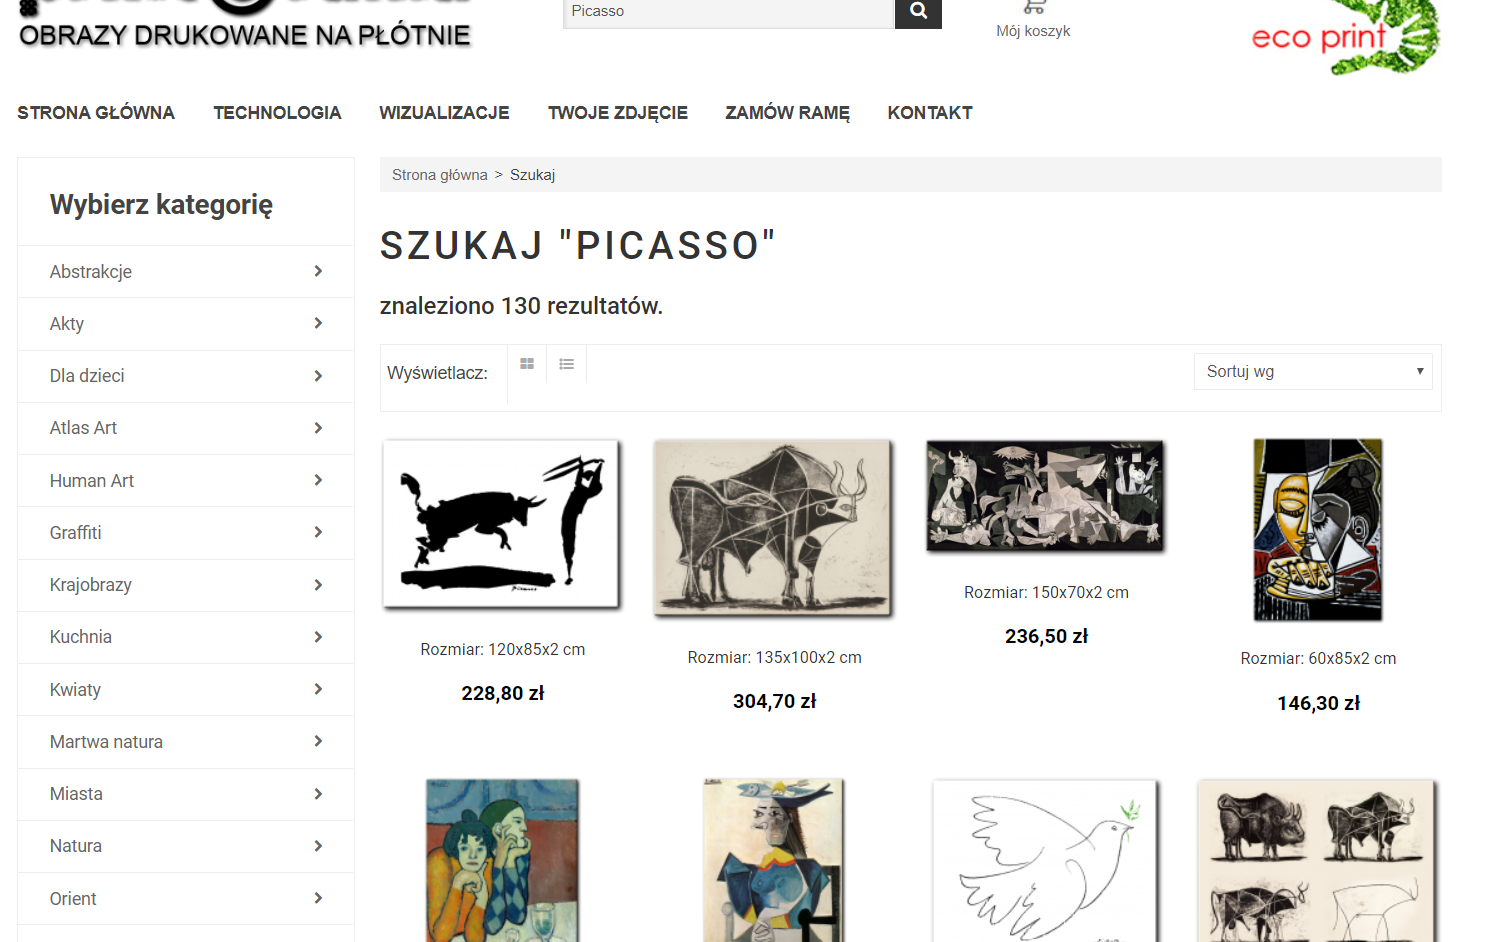 Ilustracja przedstawia stronę internetową sklepu, oferującego obrazy drukowane na płótnie. Ukazane są oferty obrazów wraz z cenami. Przedstawione są obrazy malarza Pabla Picassy.